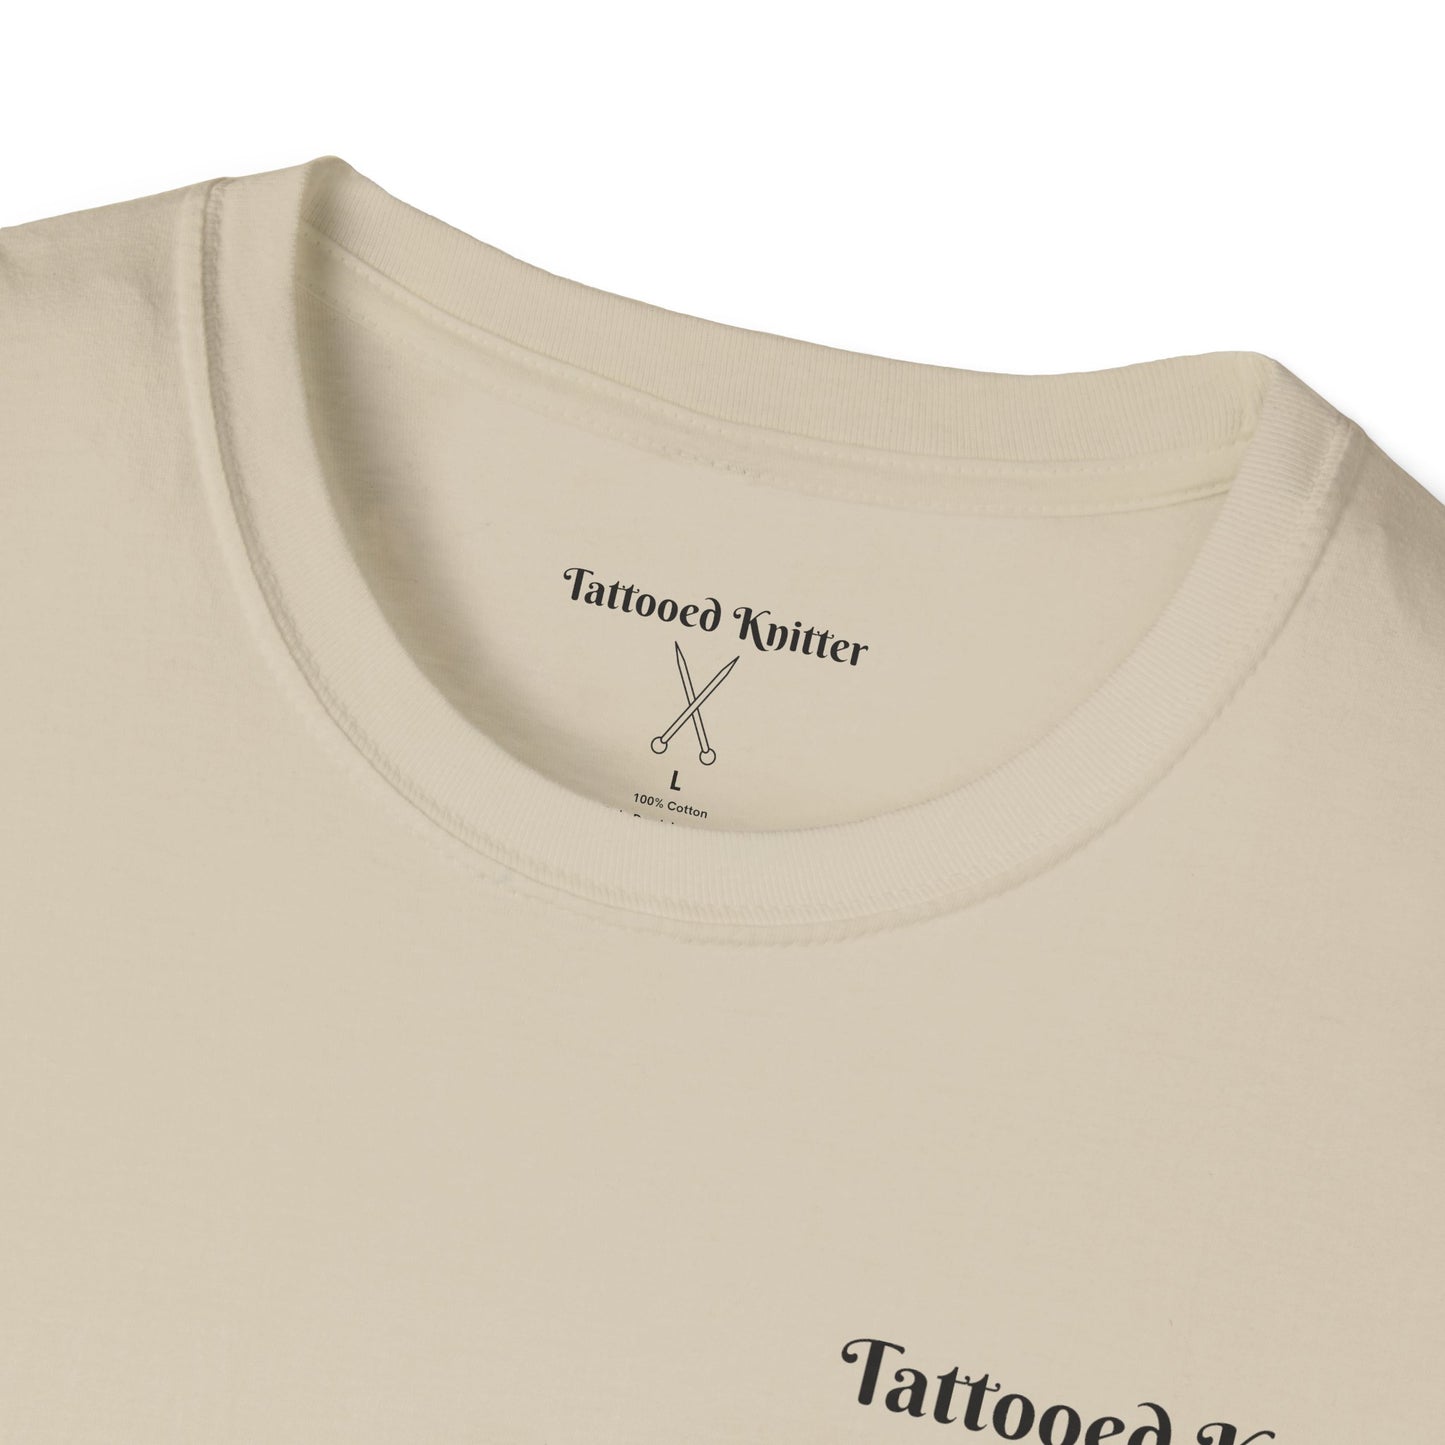 Unisex Tattooed Knitter T